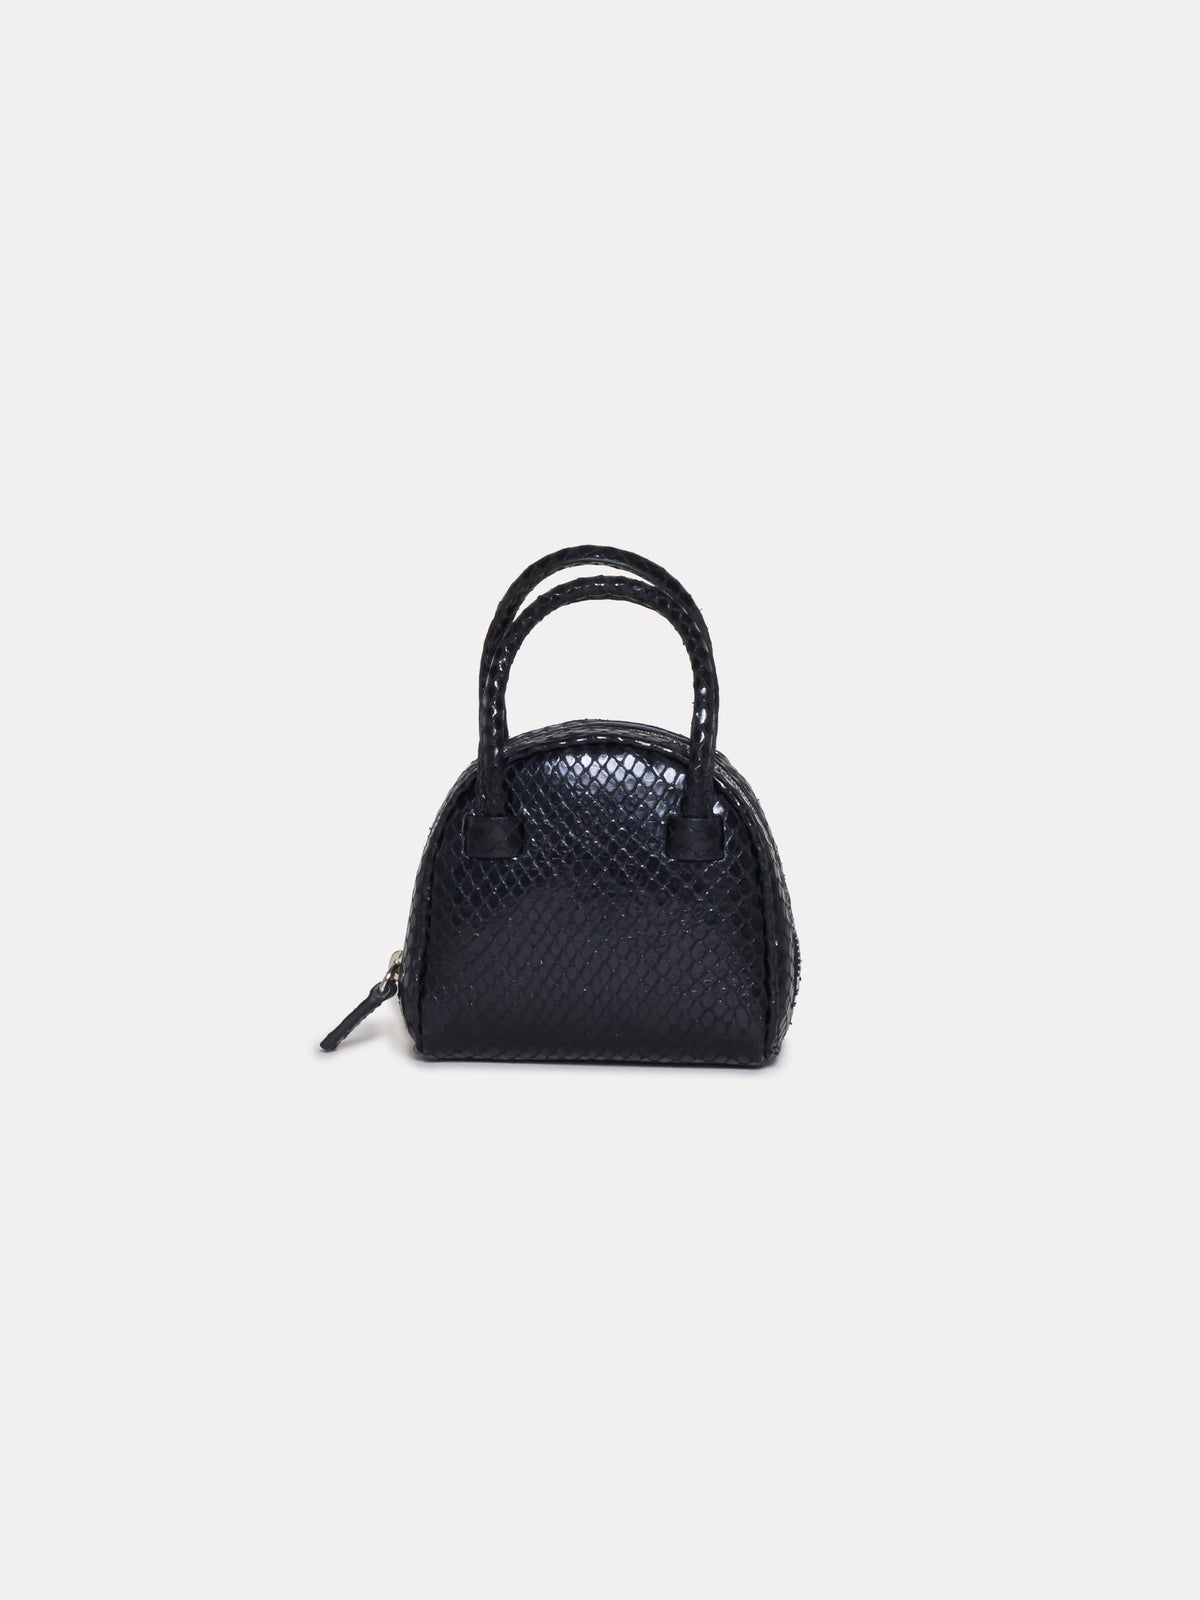 Black Python Mini Bag